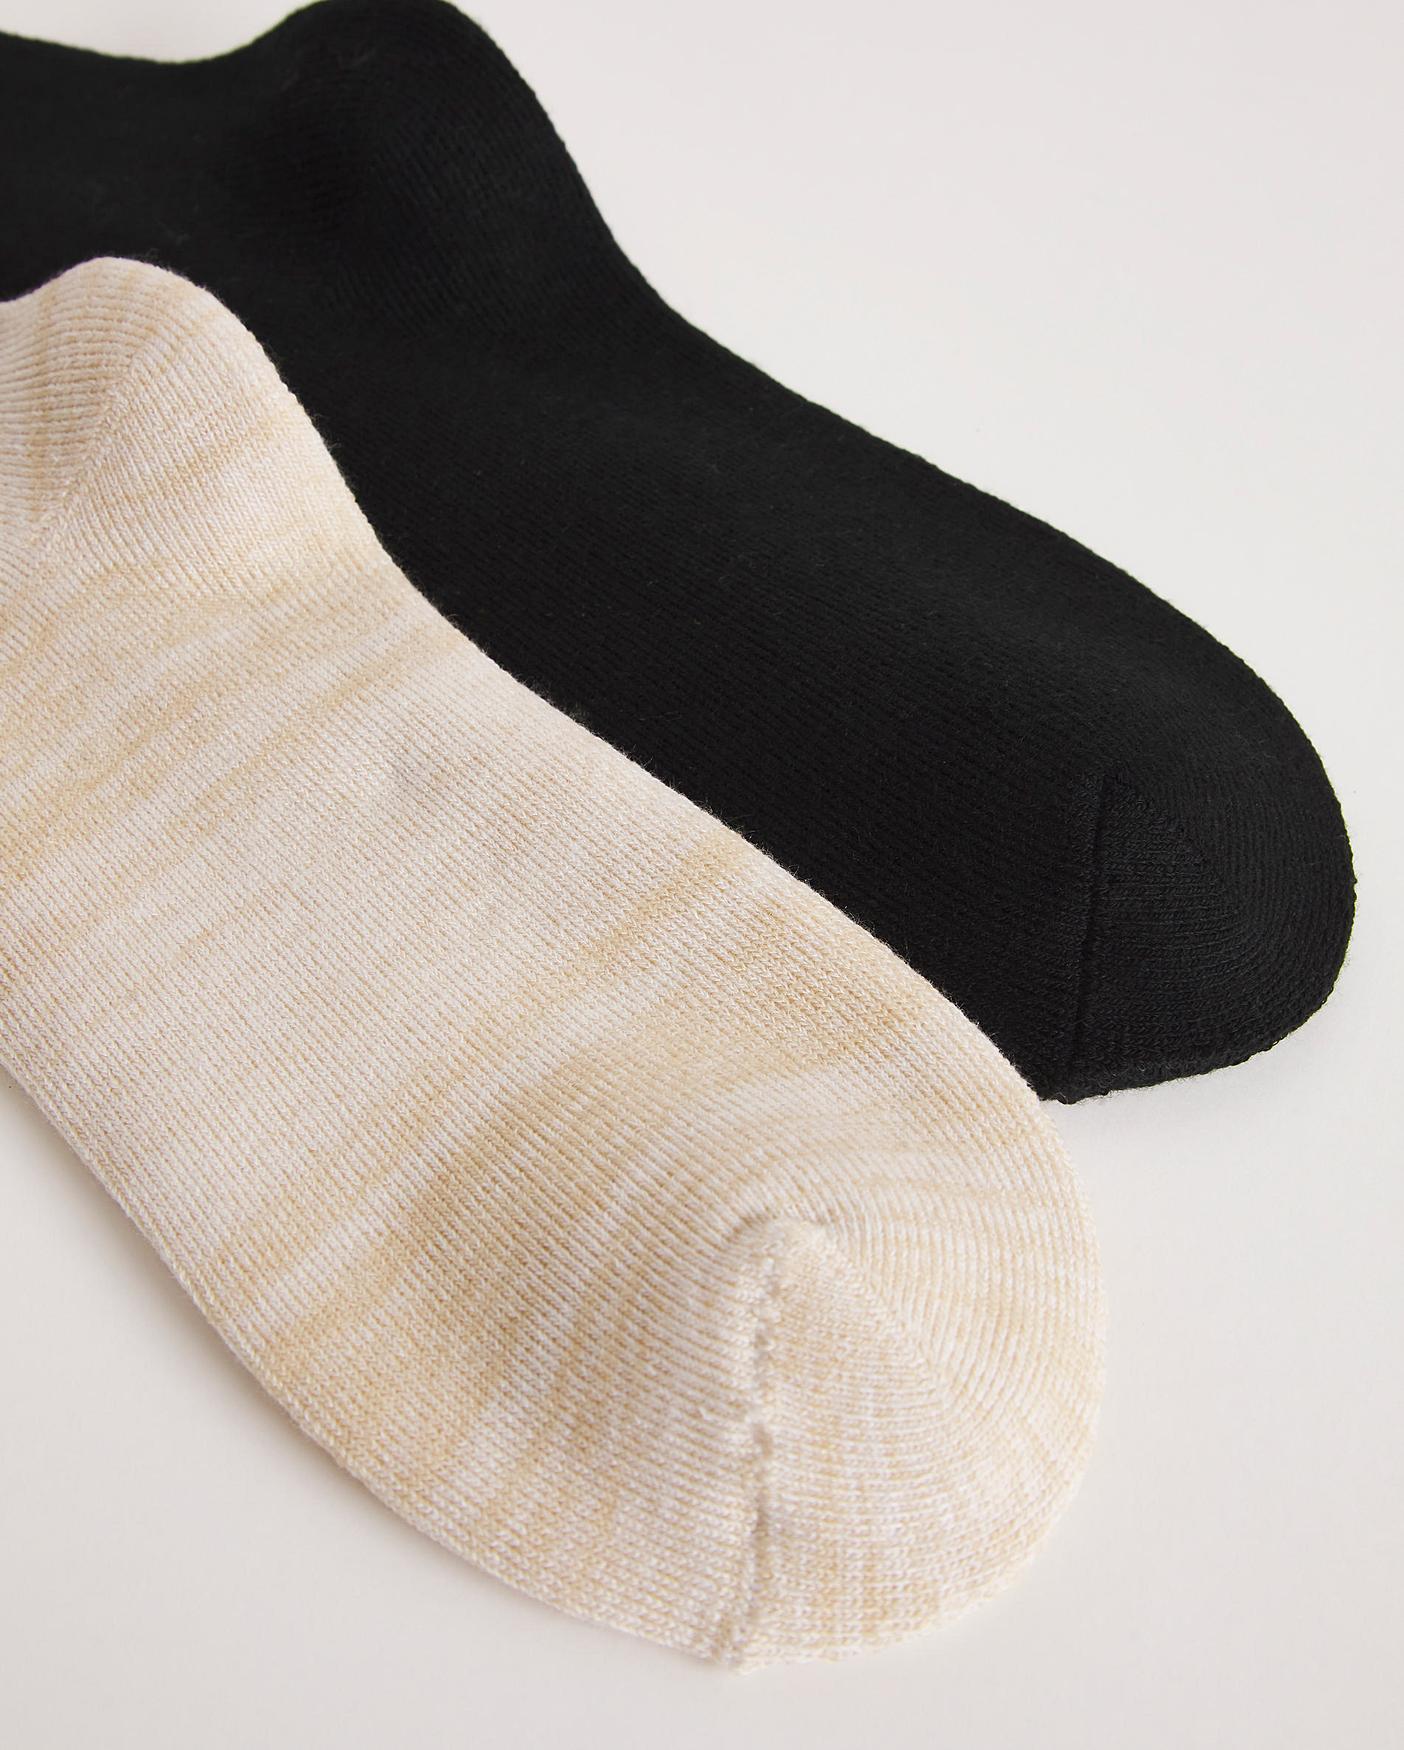 Ted Baker Socks for Men, Online Sale up to 19% off